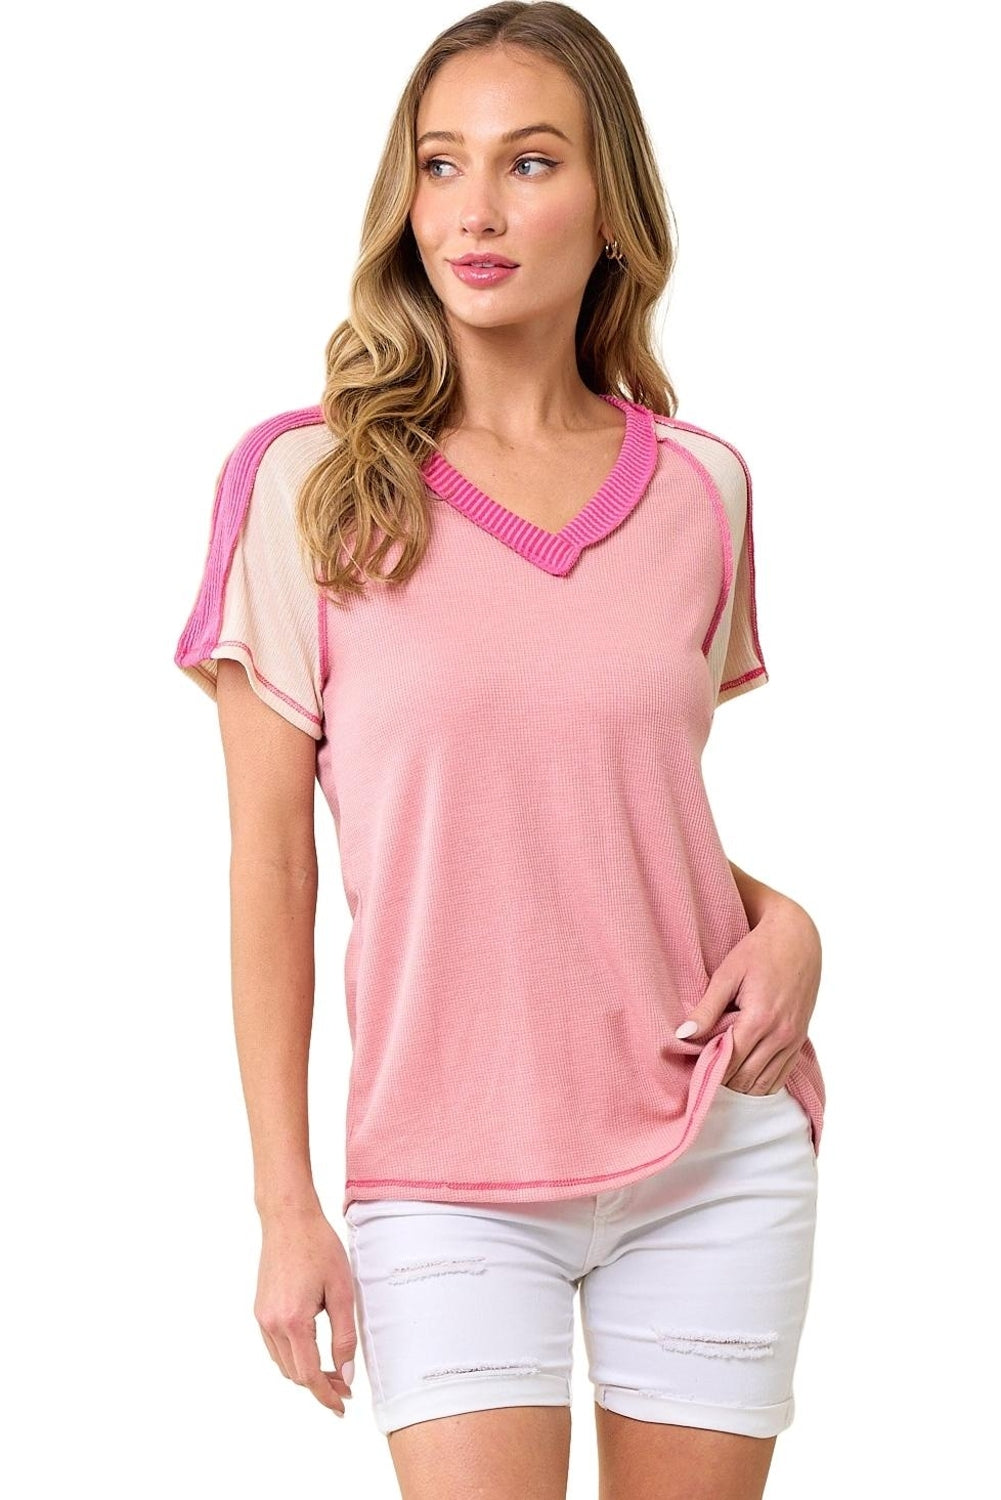 T-shirt rosa con scollo a V lavorata a blocchi di colore con cuciture a vista